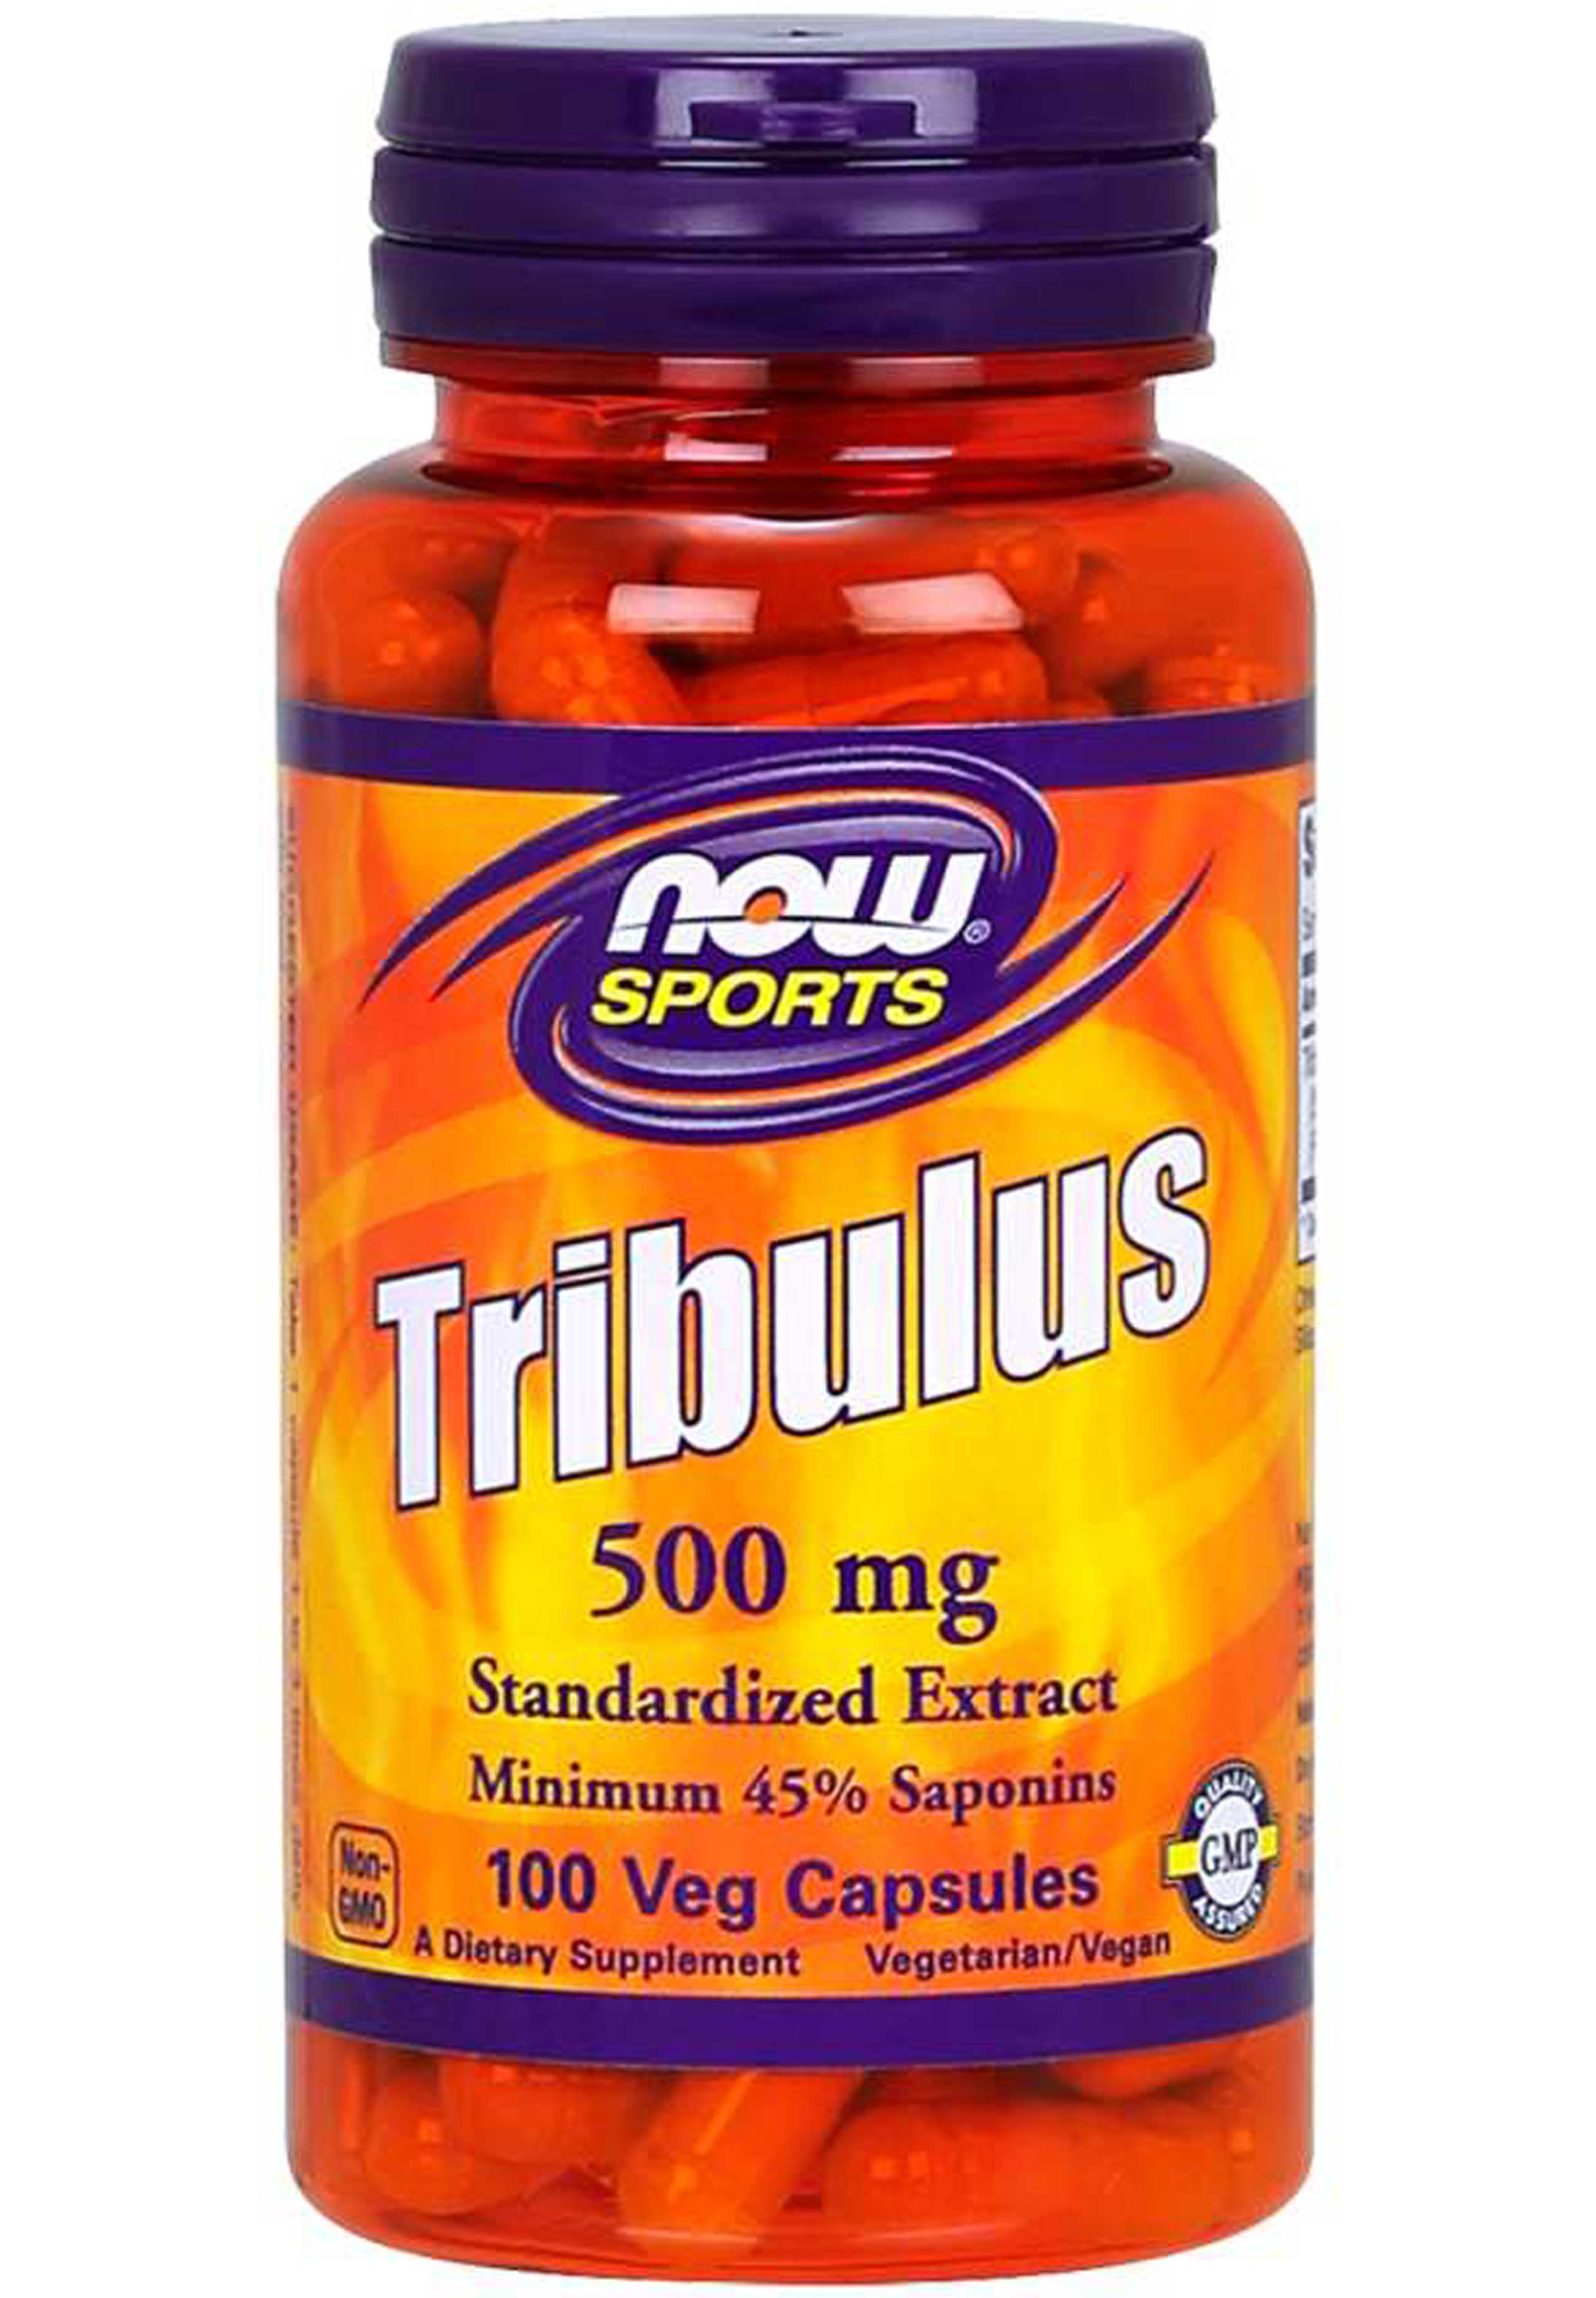 NOW Sports Tribulus 500 mg